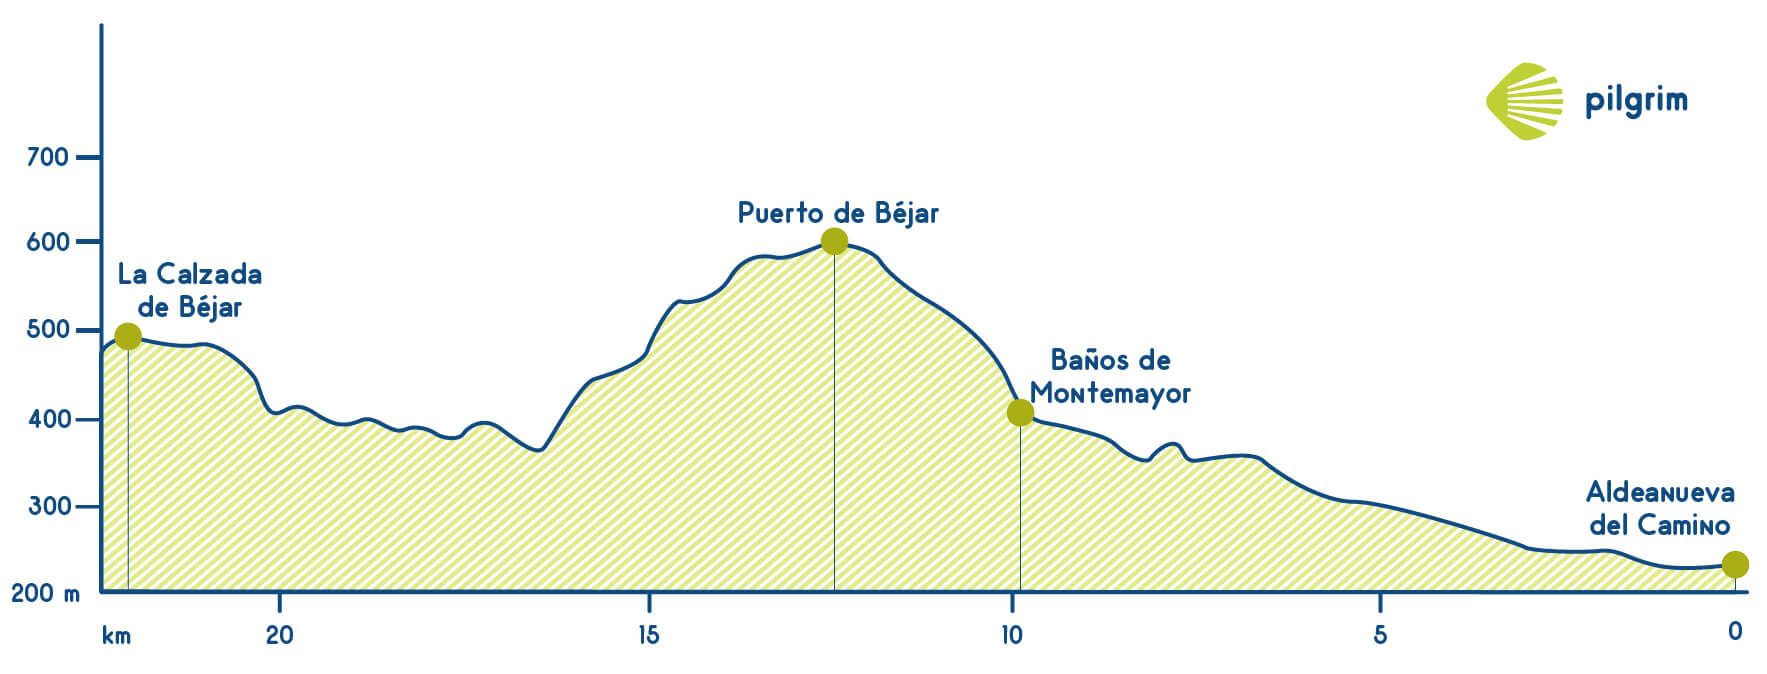 Stage 16 Vía de la Plata